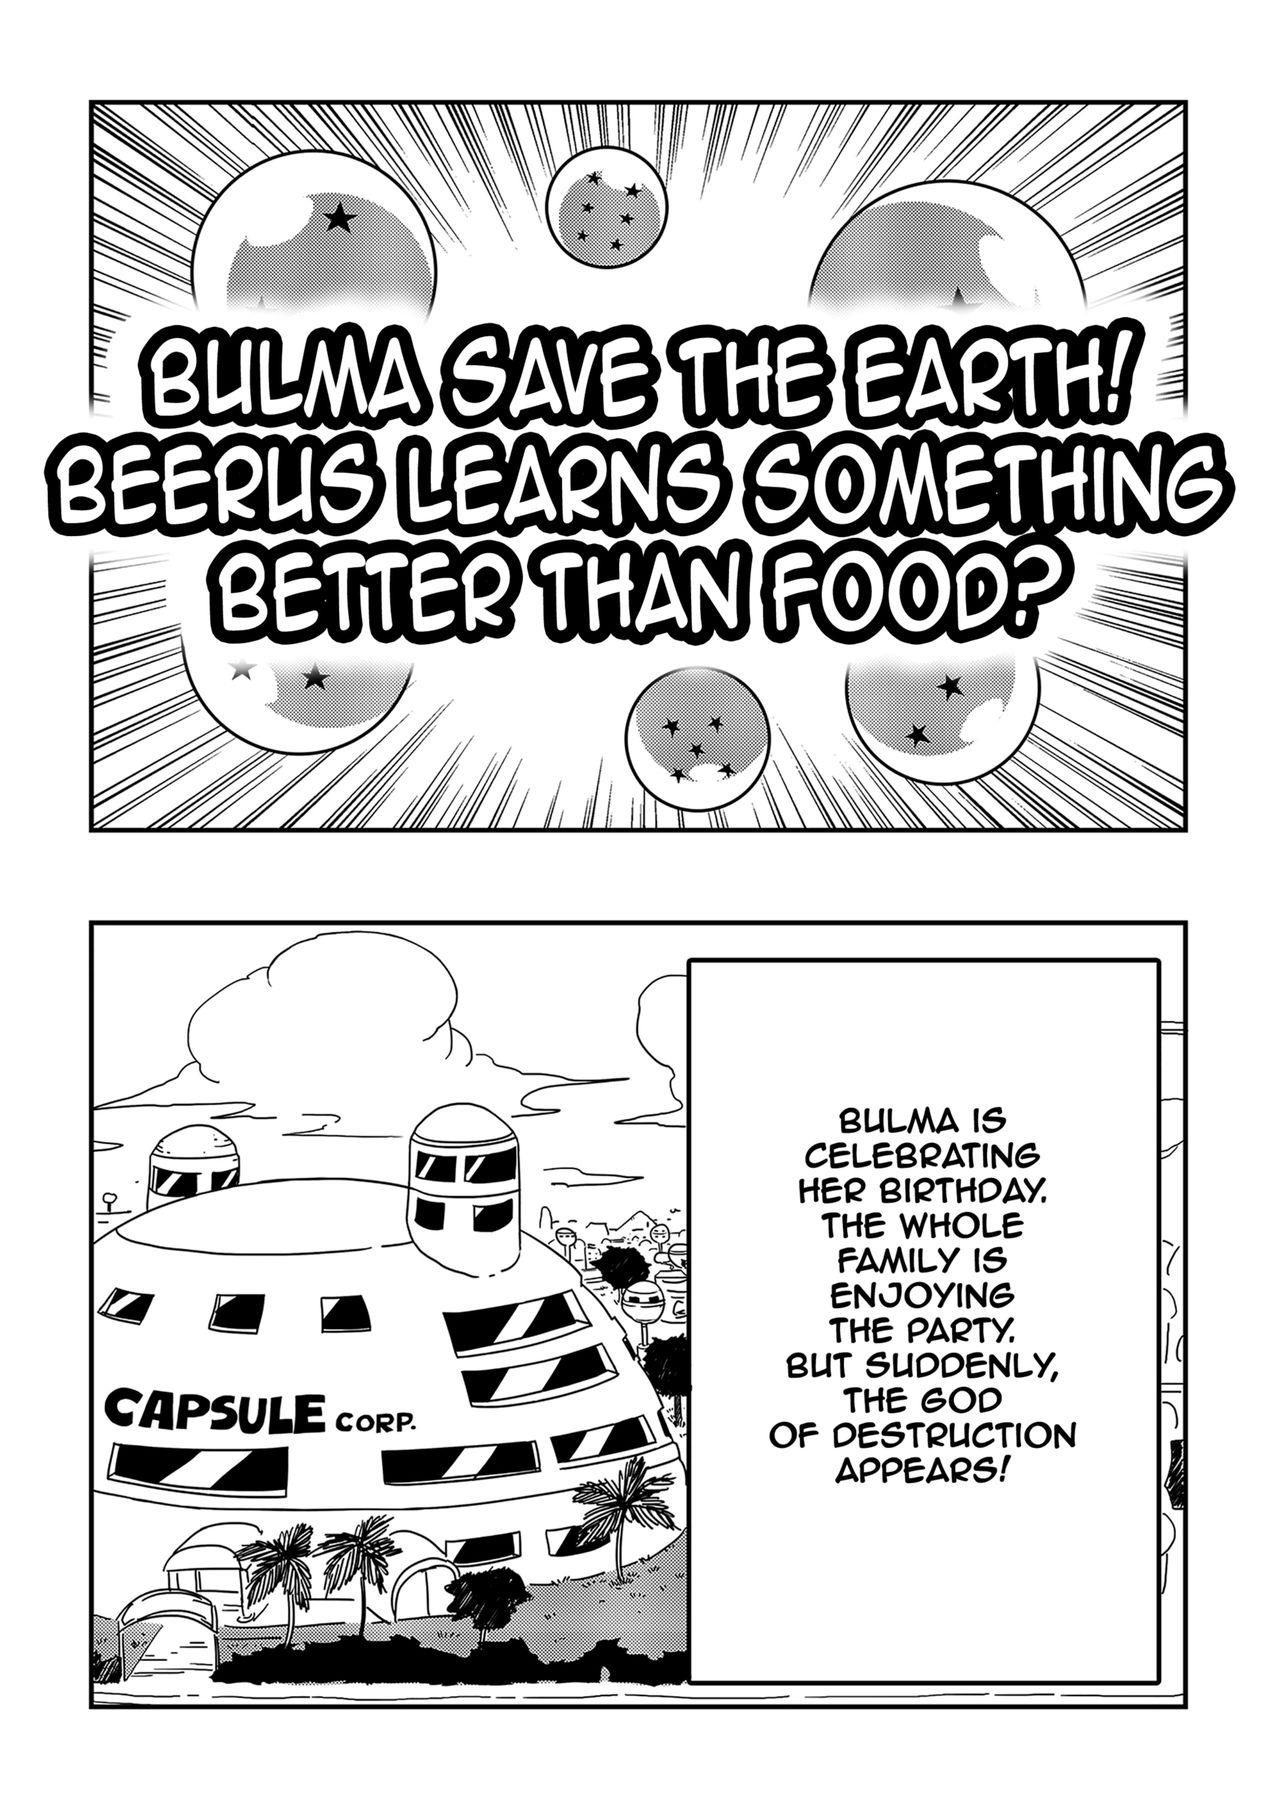 Playing Bulma Saves The Earth! - Dragon ball Asia - Page 2